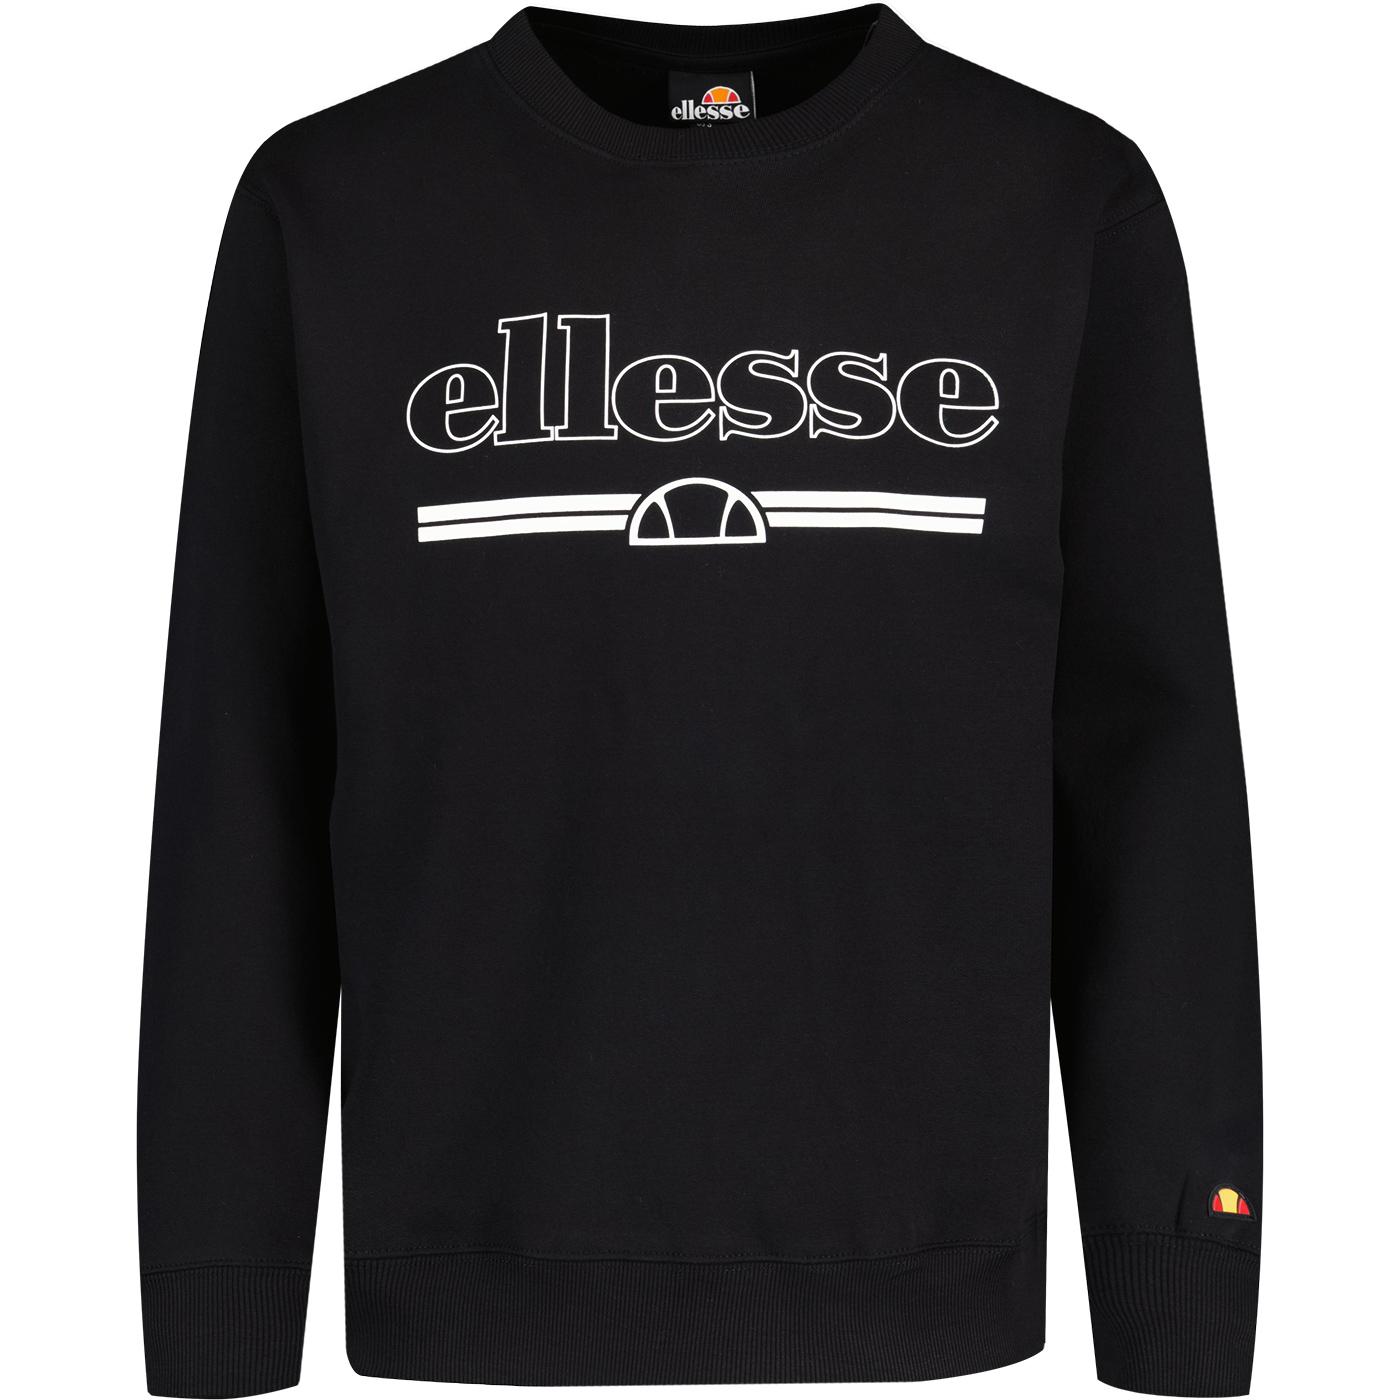 Wezen Ellesse Retro 80s Logo Crew Sweatshirt Black